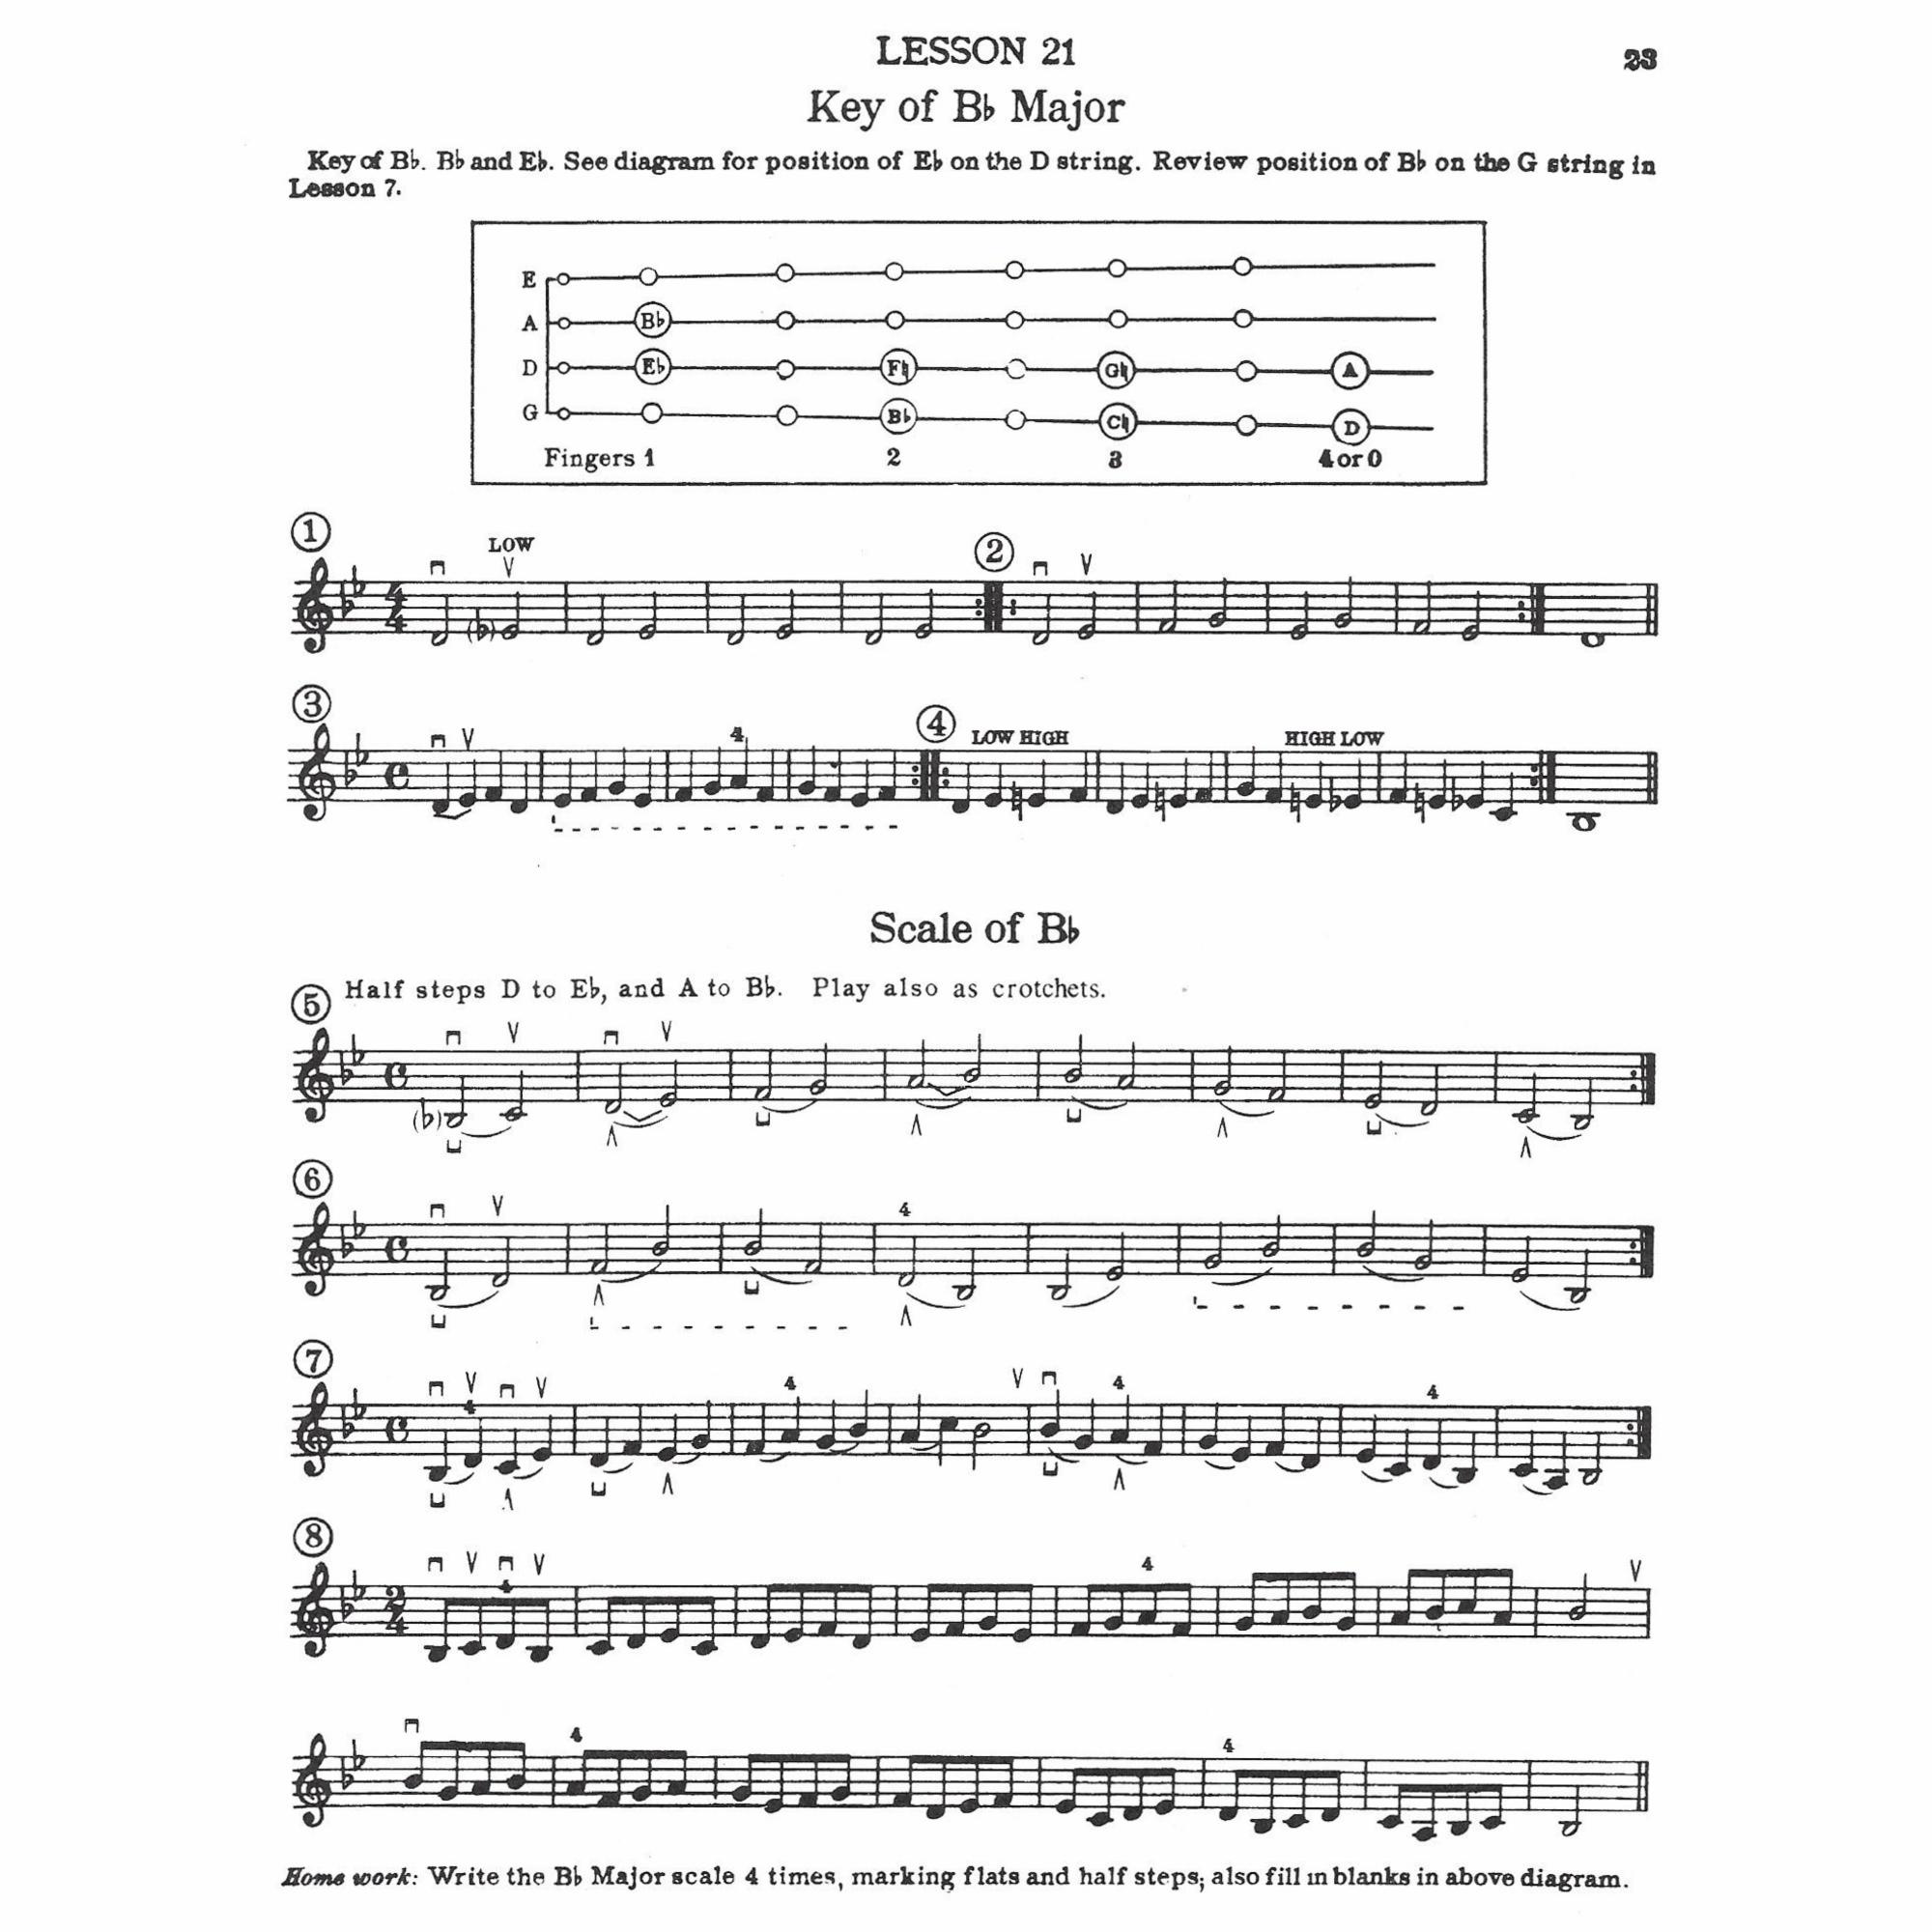 Sample: Violin (Pg. 23)